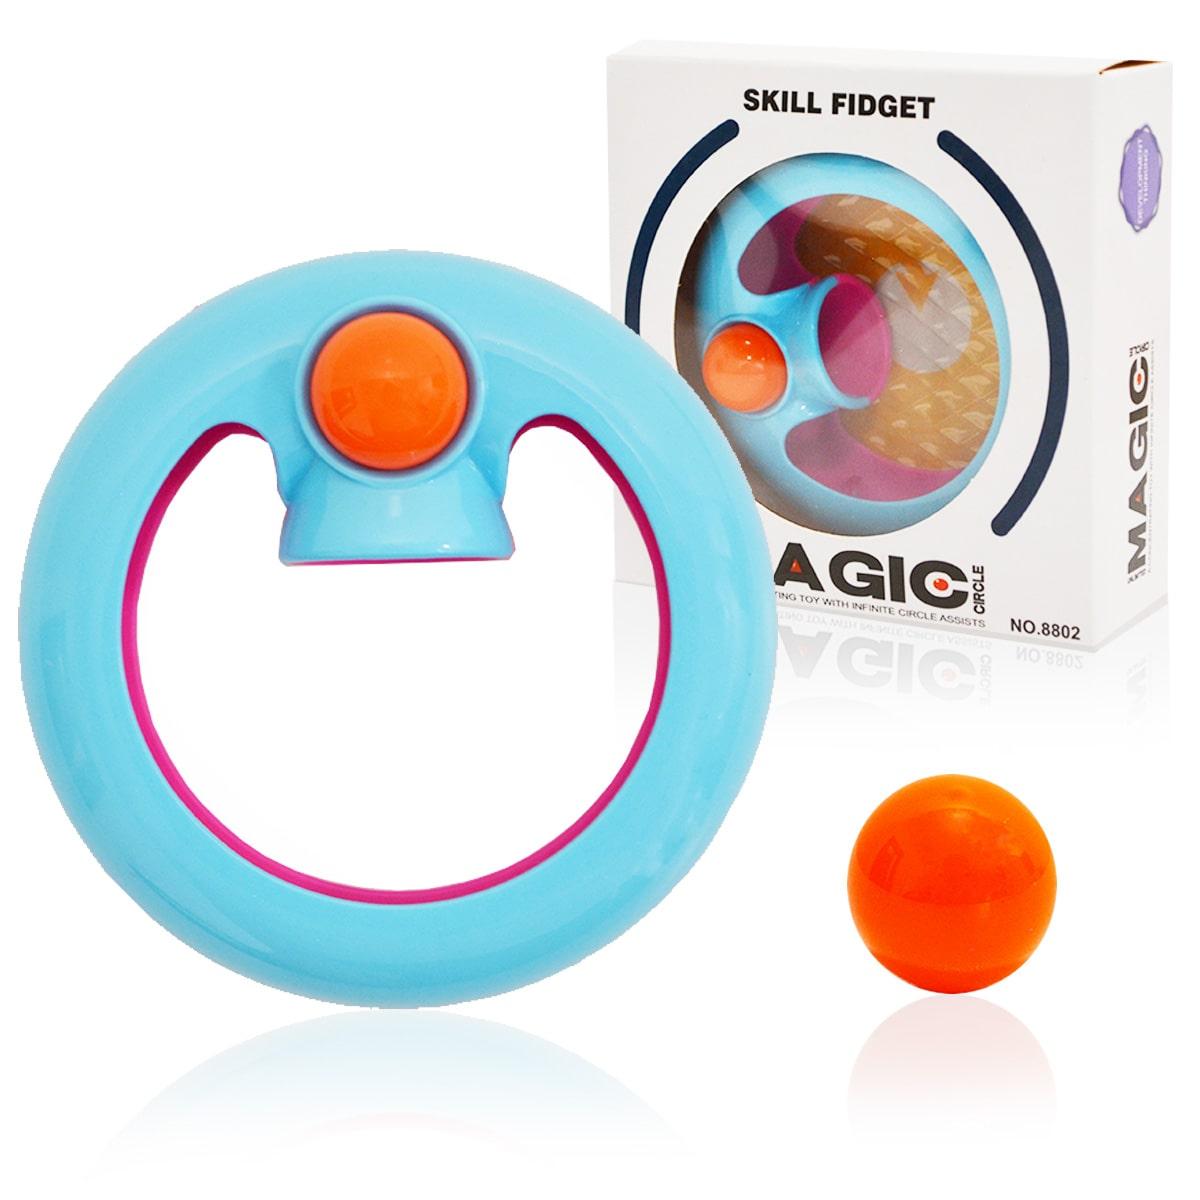 Игрушка антистресс Magic Circle цвета оранжевый, голубой и розовый beat orbit